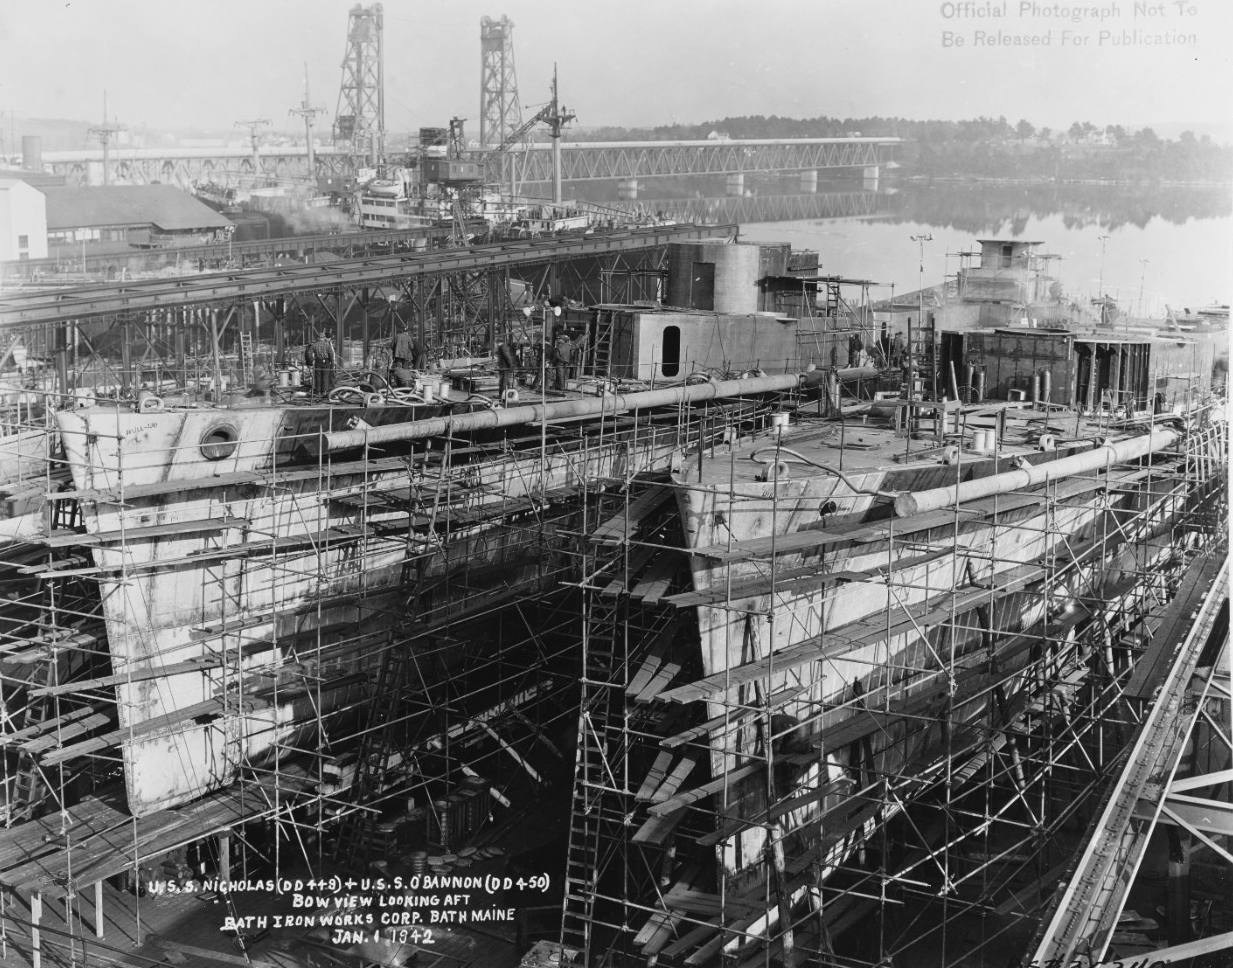 USS Nicholas (DD-449) and USS O'Bannon (DD-450) under construction